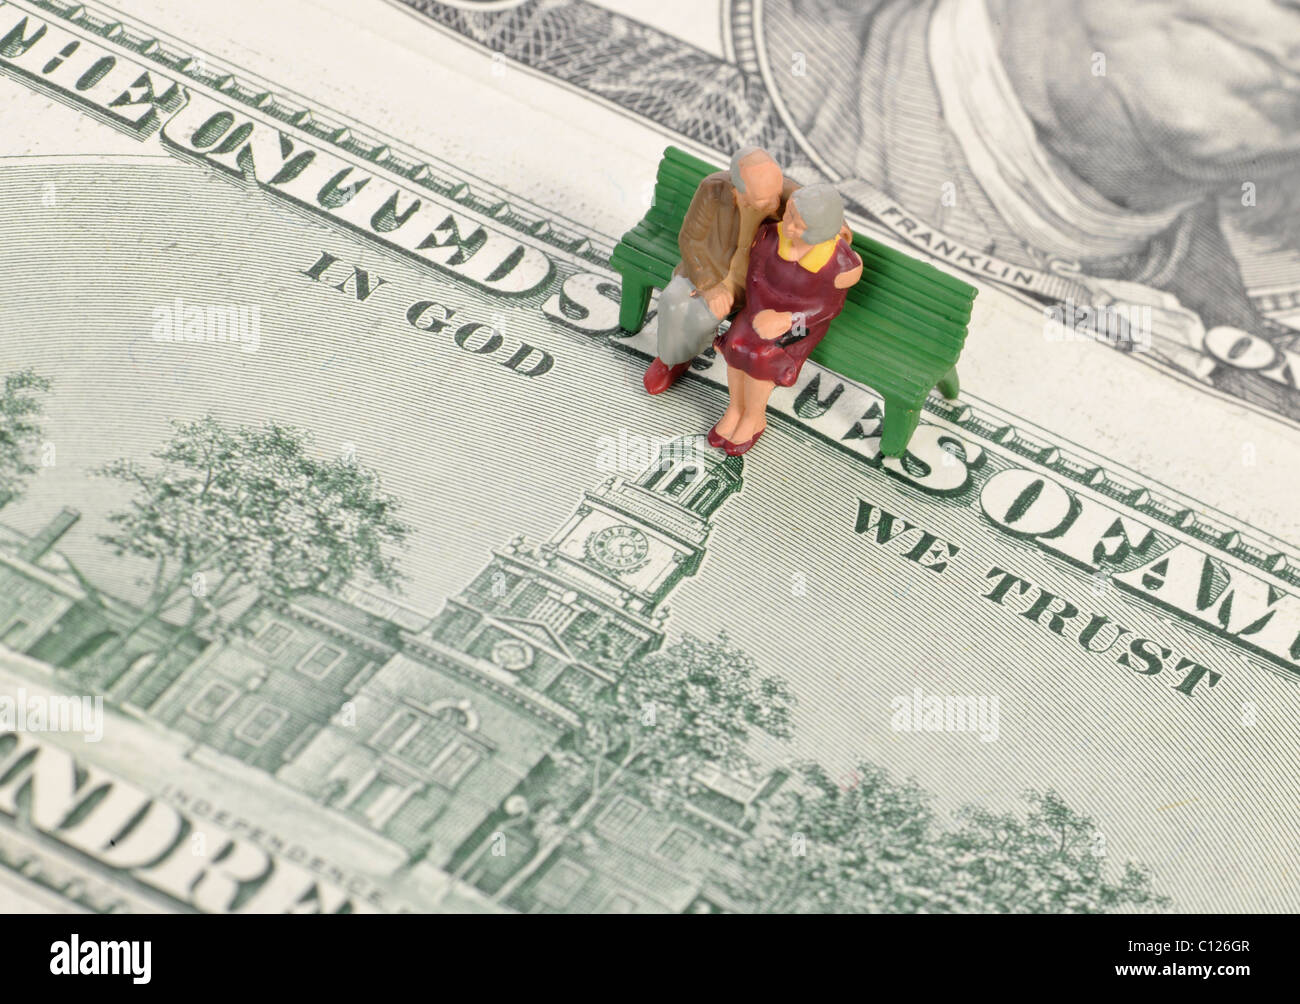 Pensionné figures miniatures sur 100 dollars, la devise In God we trust, image symbolique de la retraite, de la retraite anticipée Banque D'Images